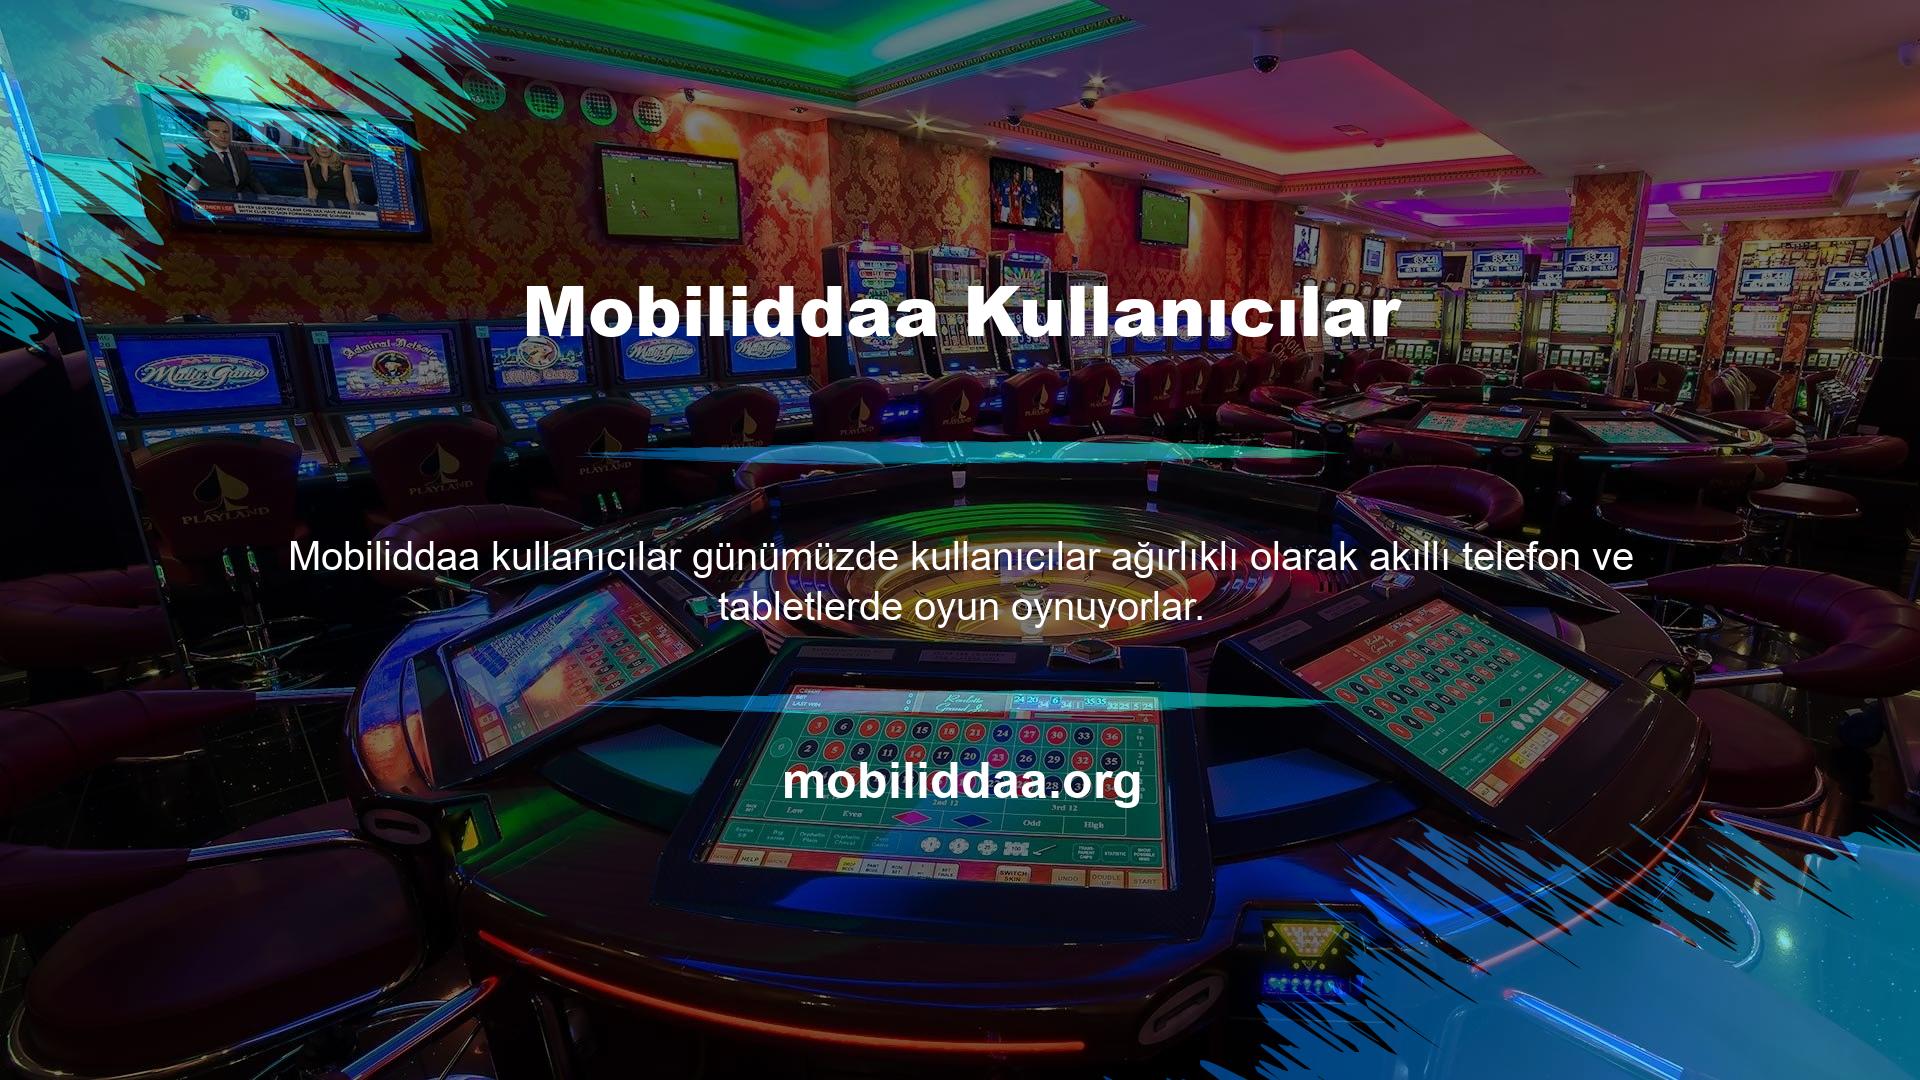 Mobiliddaa cep telefonları dünya çapında bunu desteklemekte ve Türkiye pazarında tercih edilmektedir